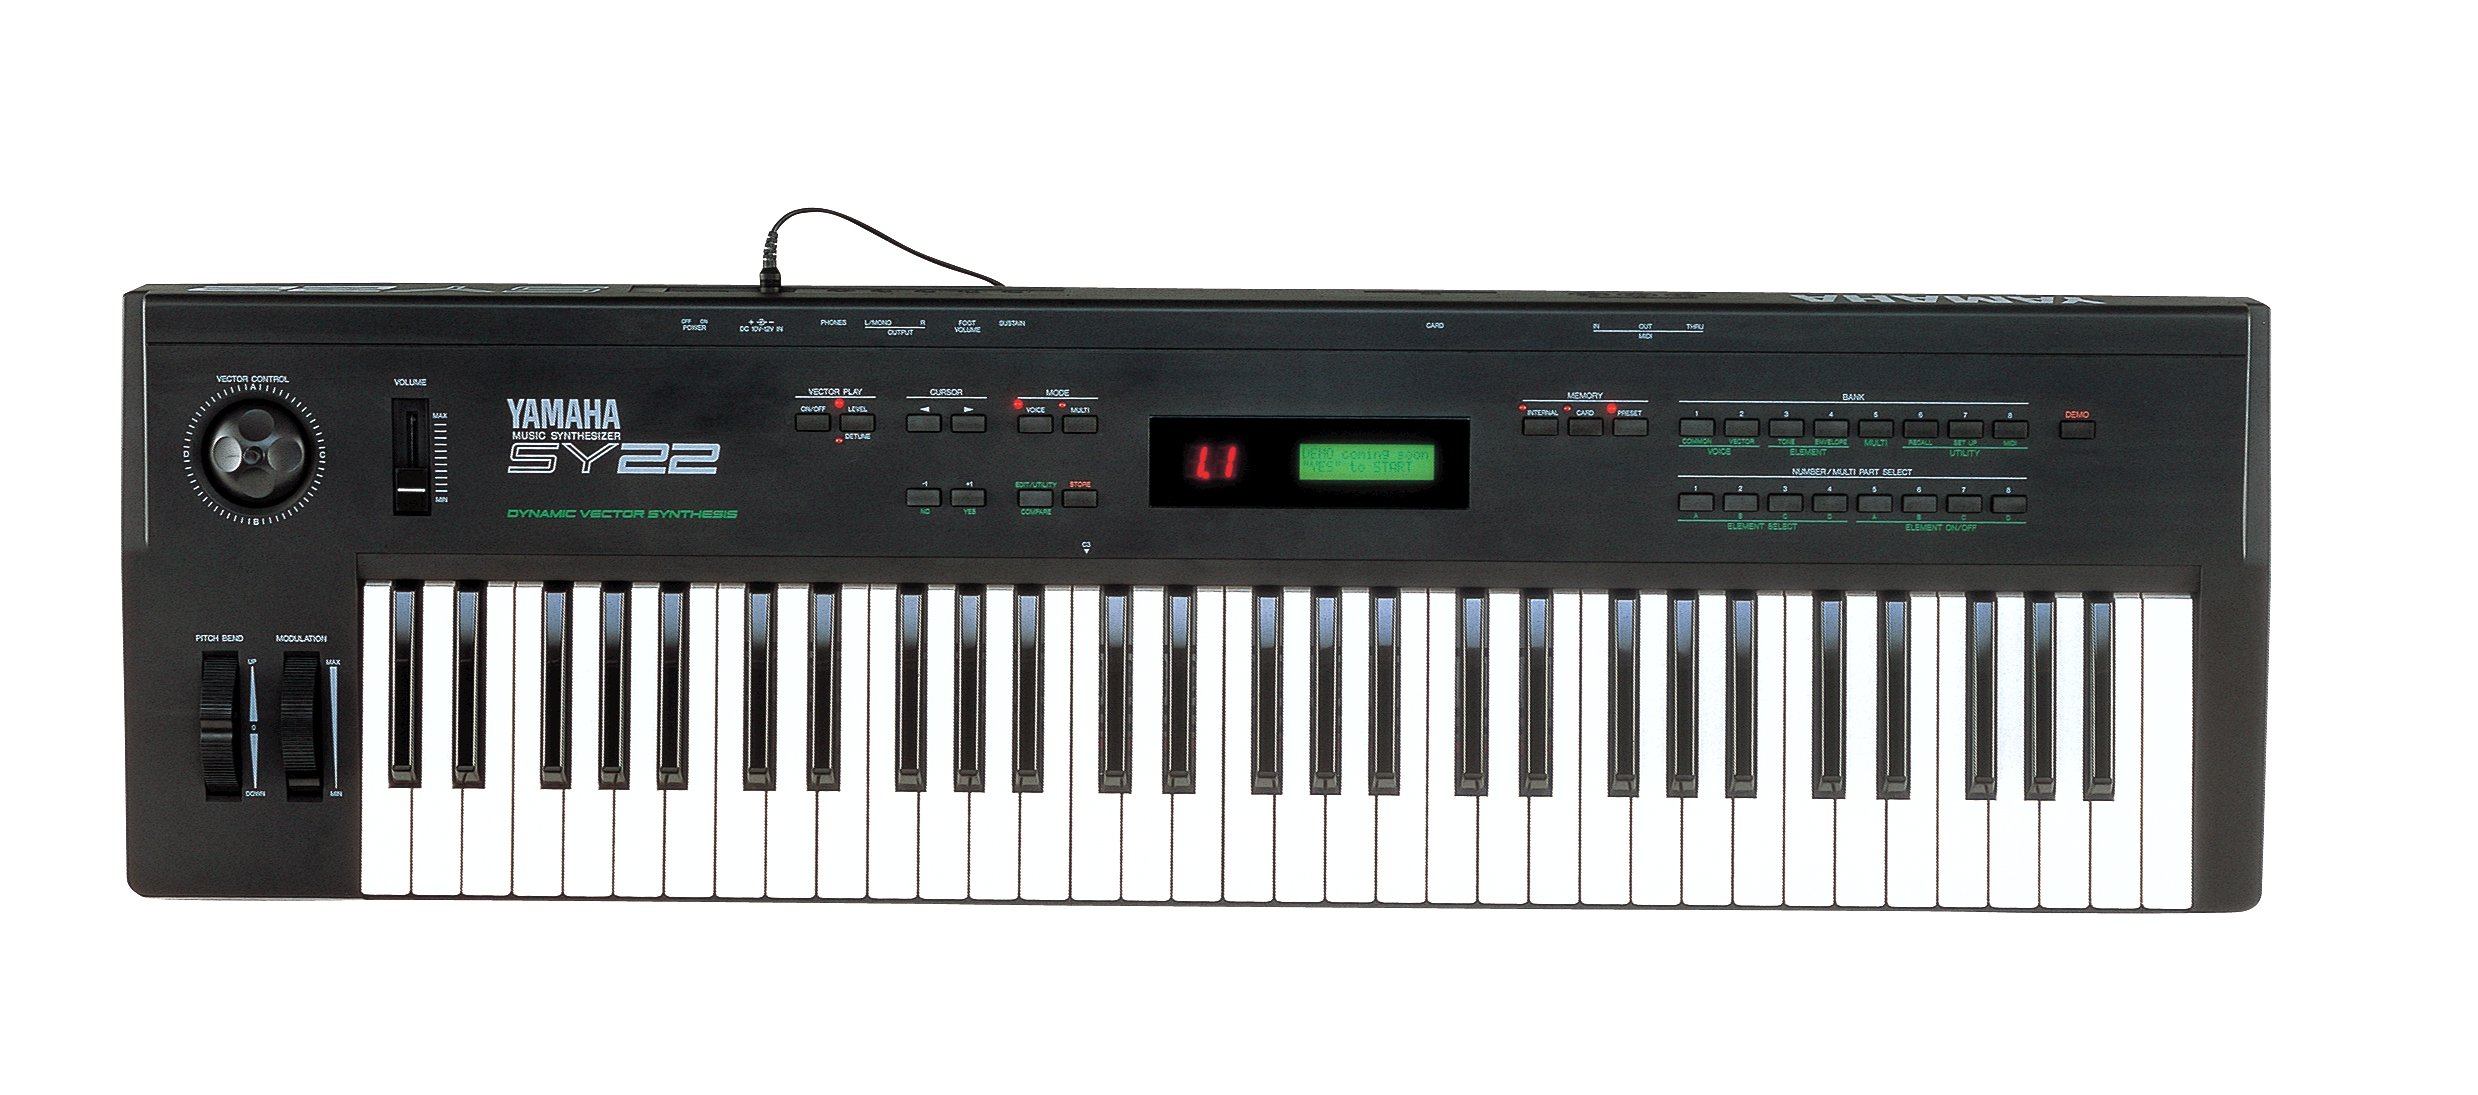 新しいスタイル YAMAHA SY22 シンセサイザー 1990 鍵盤楽器 - www